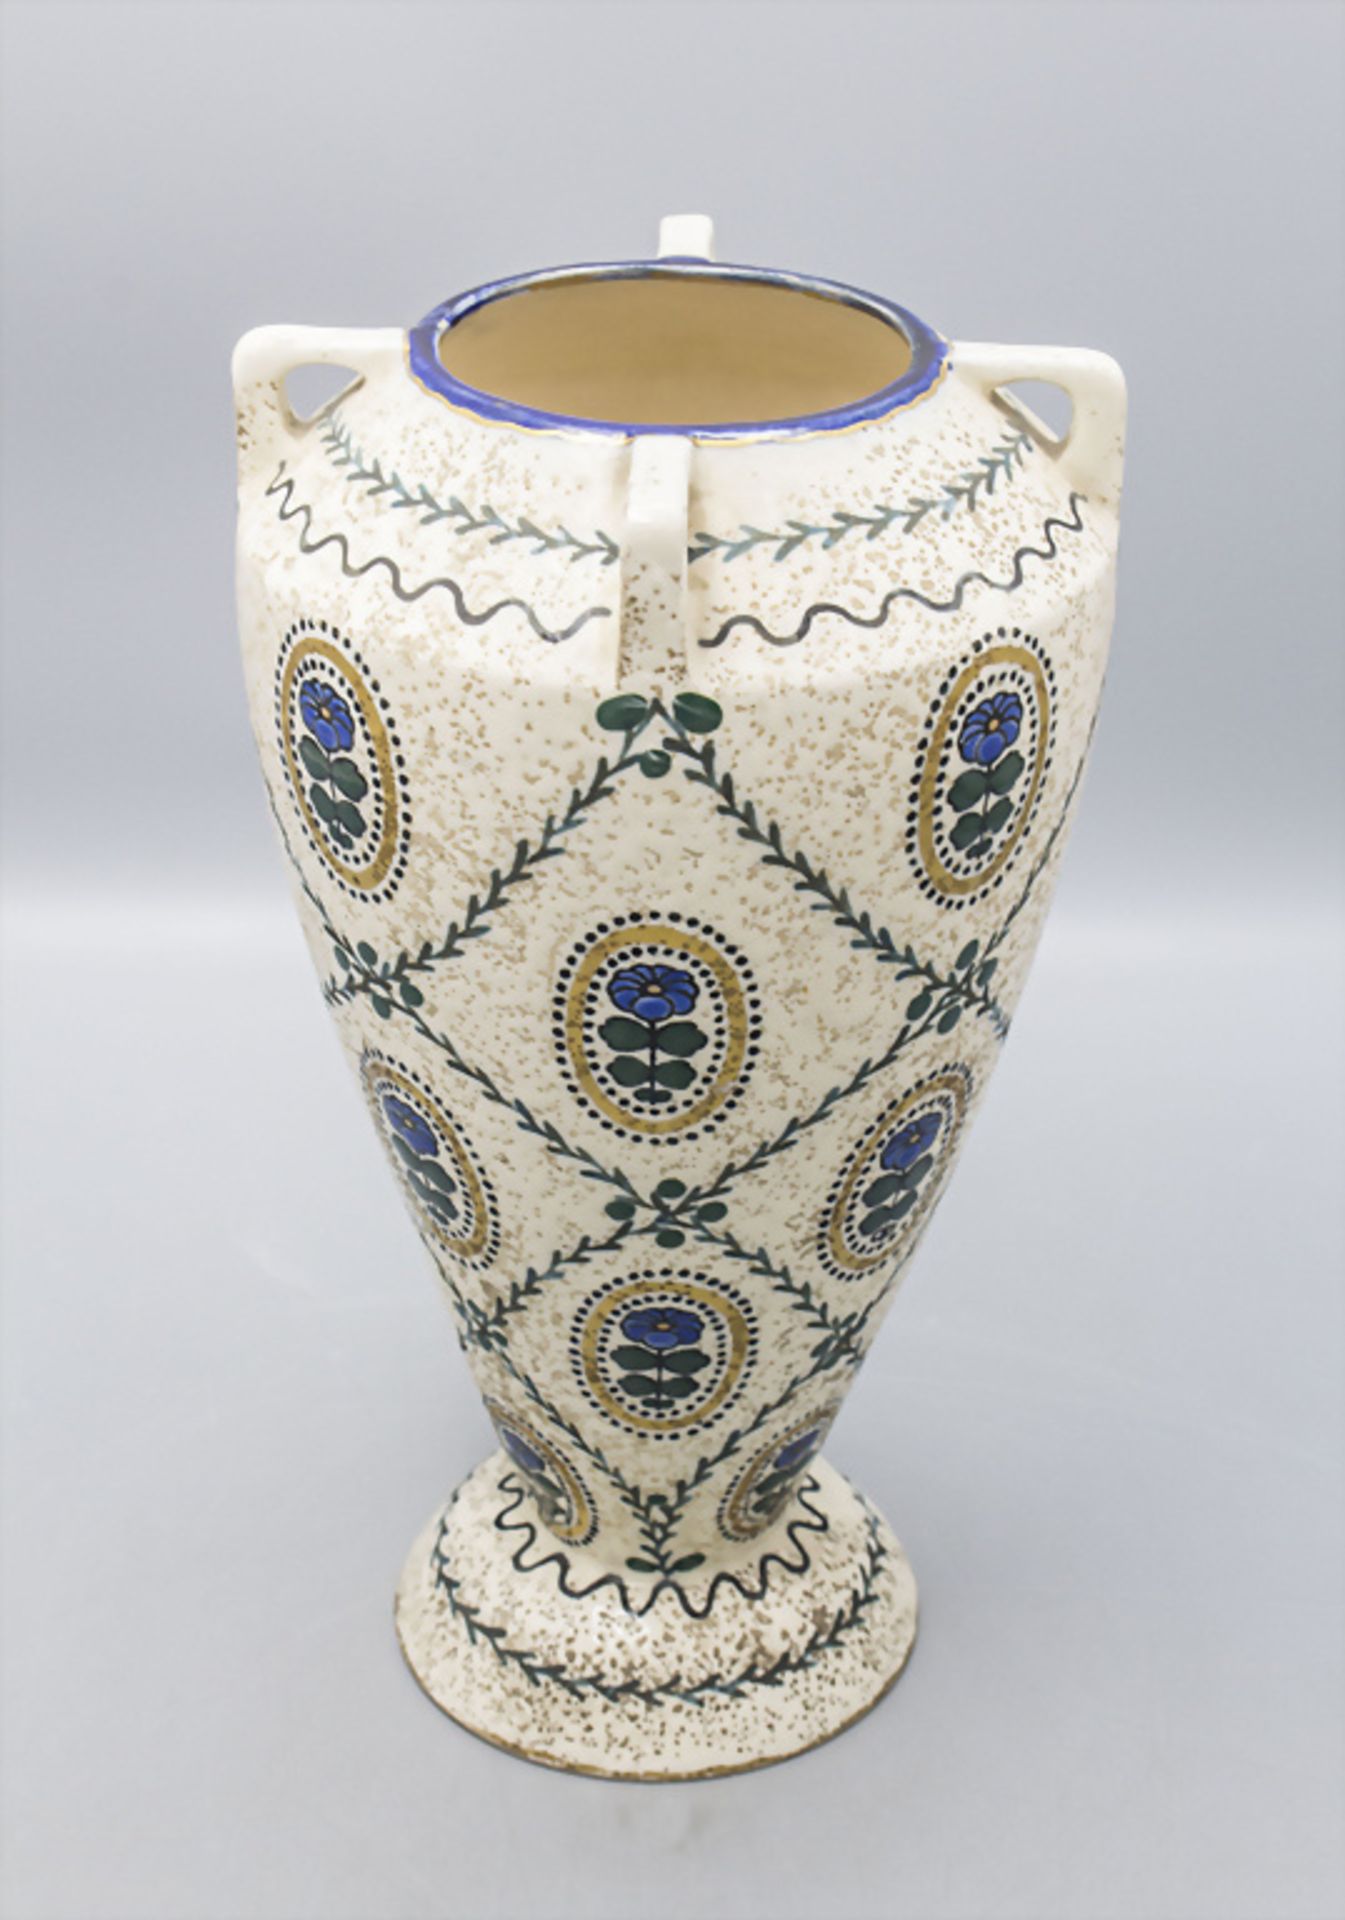 Jugendstil Vase / An Art Nouveau vase, Ernst Wahliss, Wien/Turn-Teplitz, um 1910 - Image 2 of 3